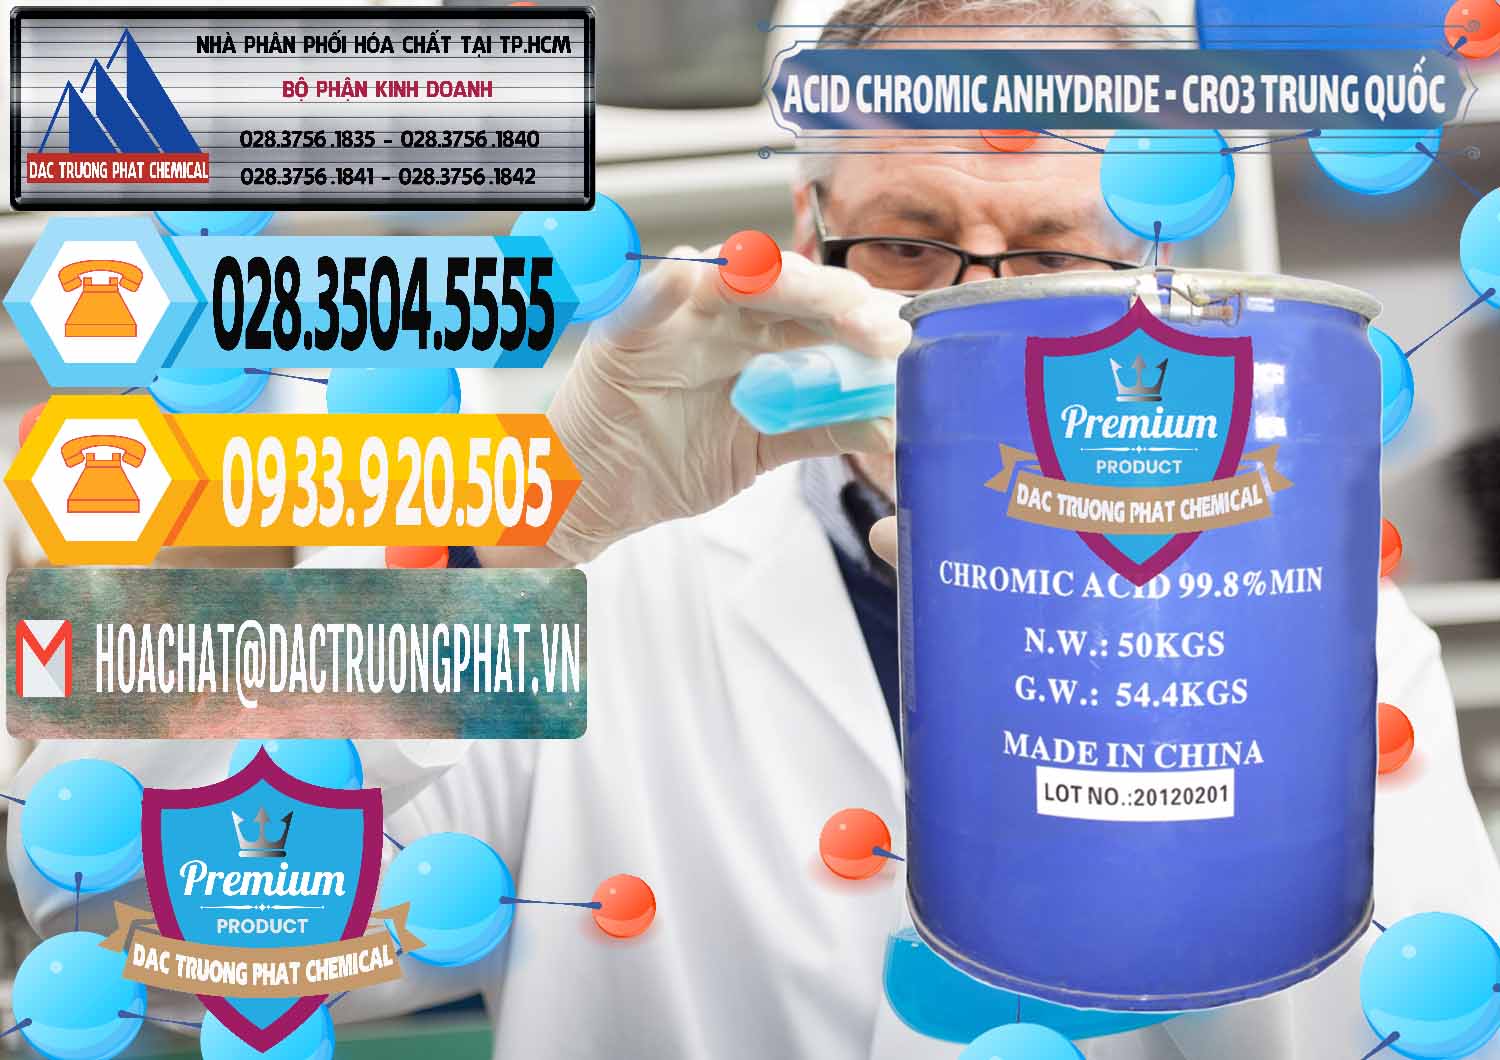 Nơi chuyên cung ứng và bán Acid Chromic Anhydride - Cromic CRO3 Trung Quốc China - 0007 - Nhập khẩu & phân phối hóa chất tại TP.HCM - hoachattayrua.net